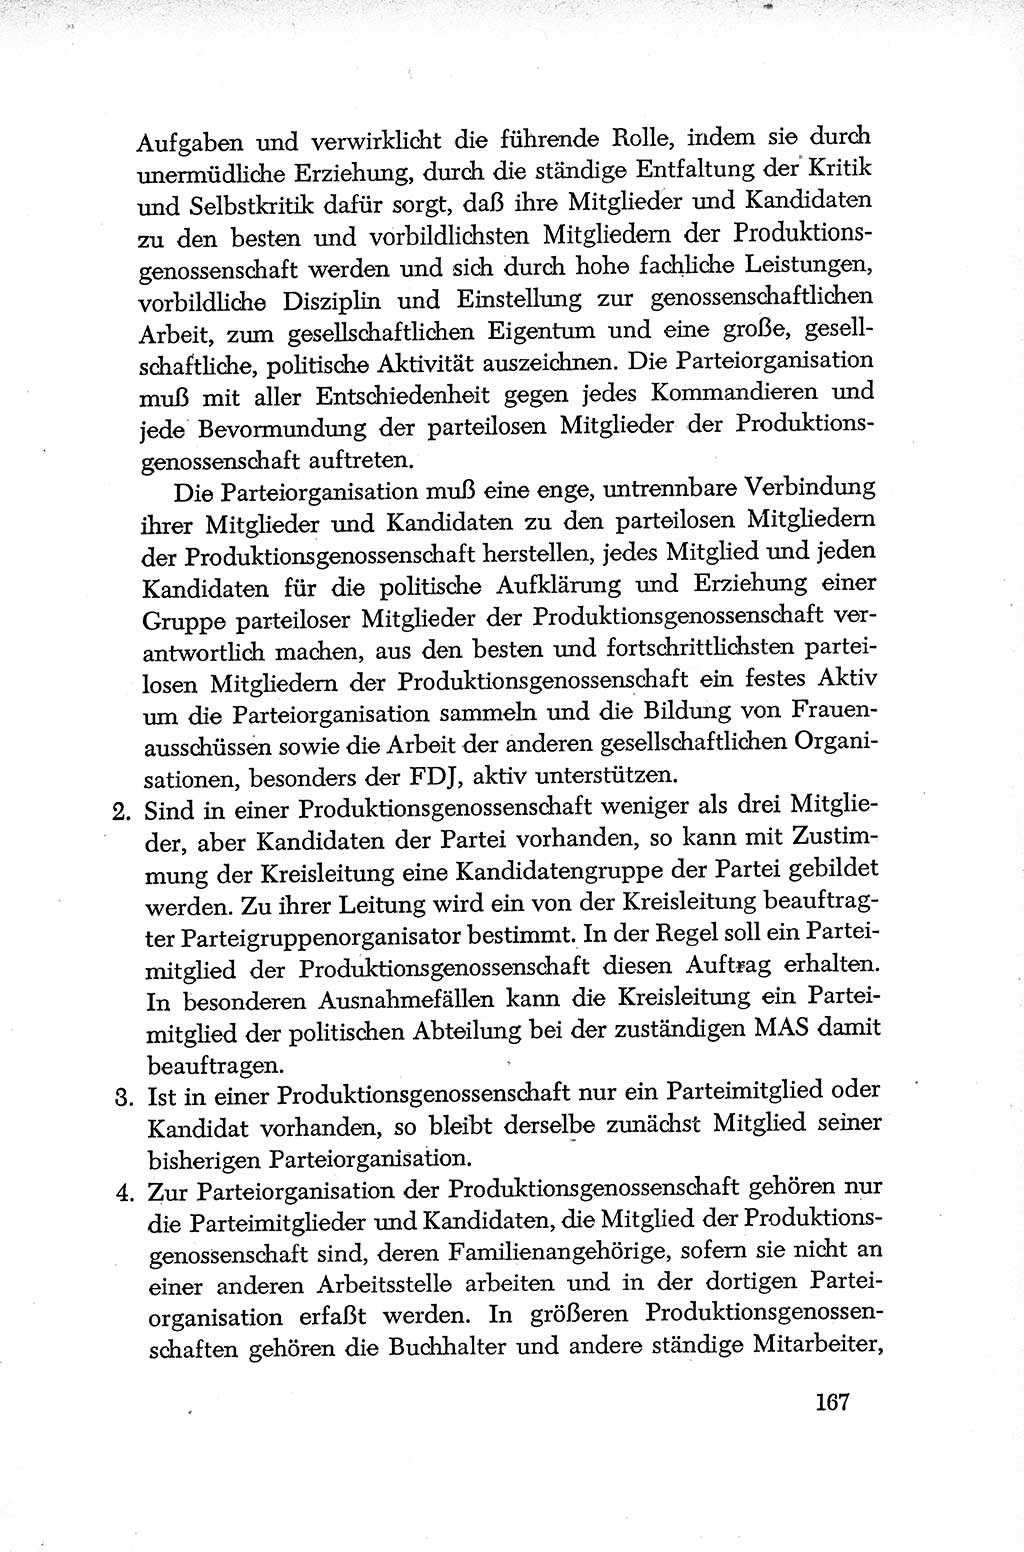 Dokumente der Sozialistischen Einheitspartei Deutschlands (SED) [Deutsche Demokratische Republik (DDR)] 1952-1953, Seite 167 (Dok. SED DDR 1952-1953, S. 167)